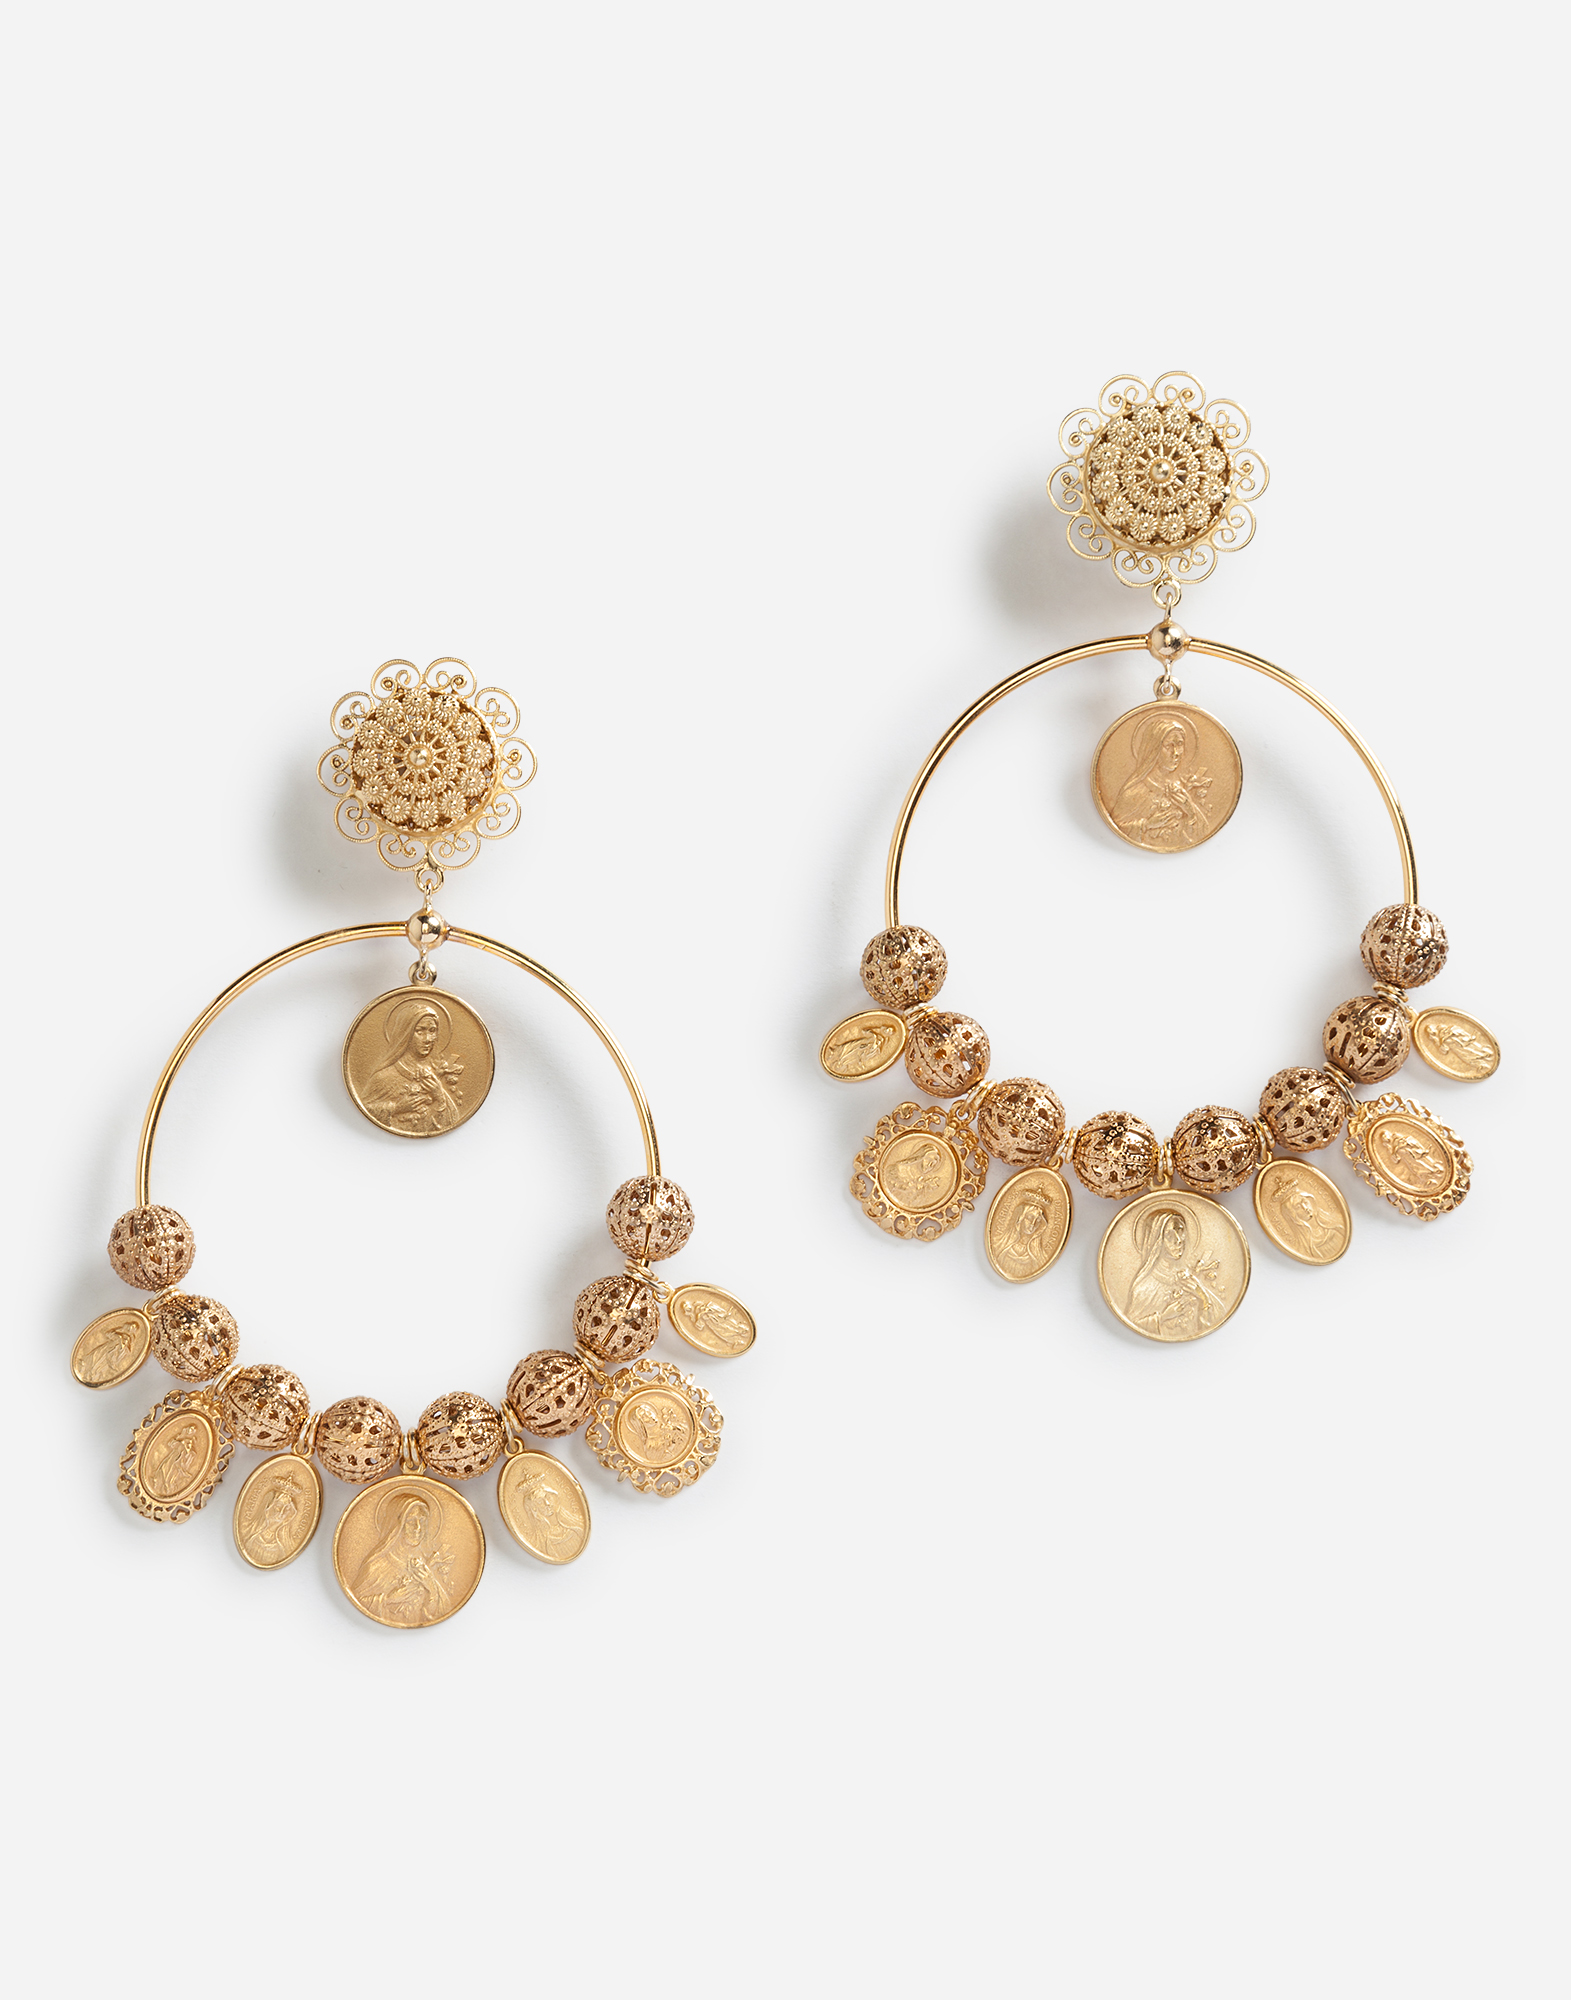 Pendant earrings in Gold